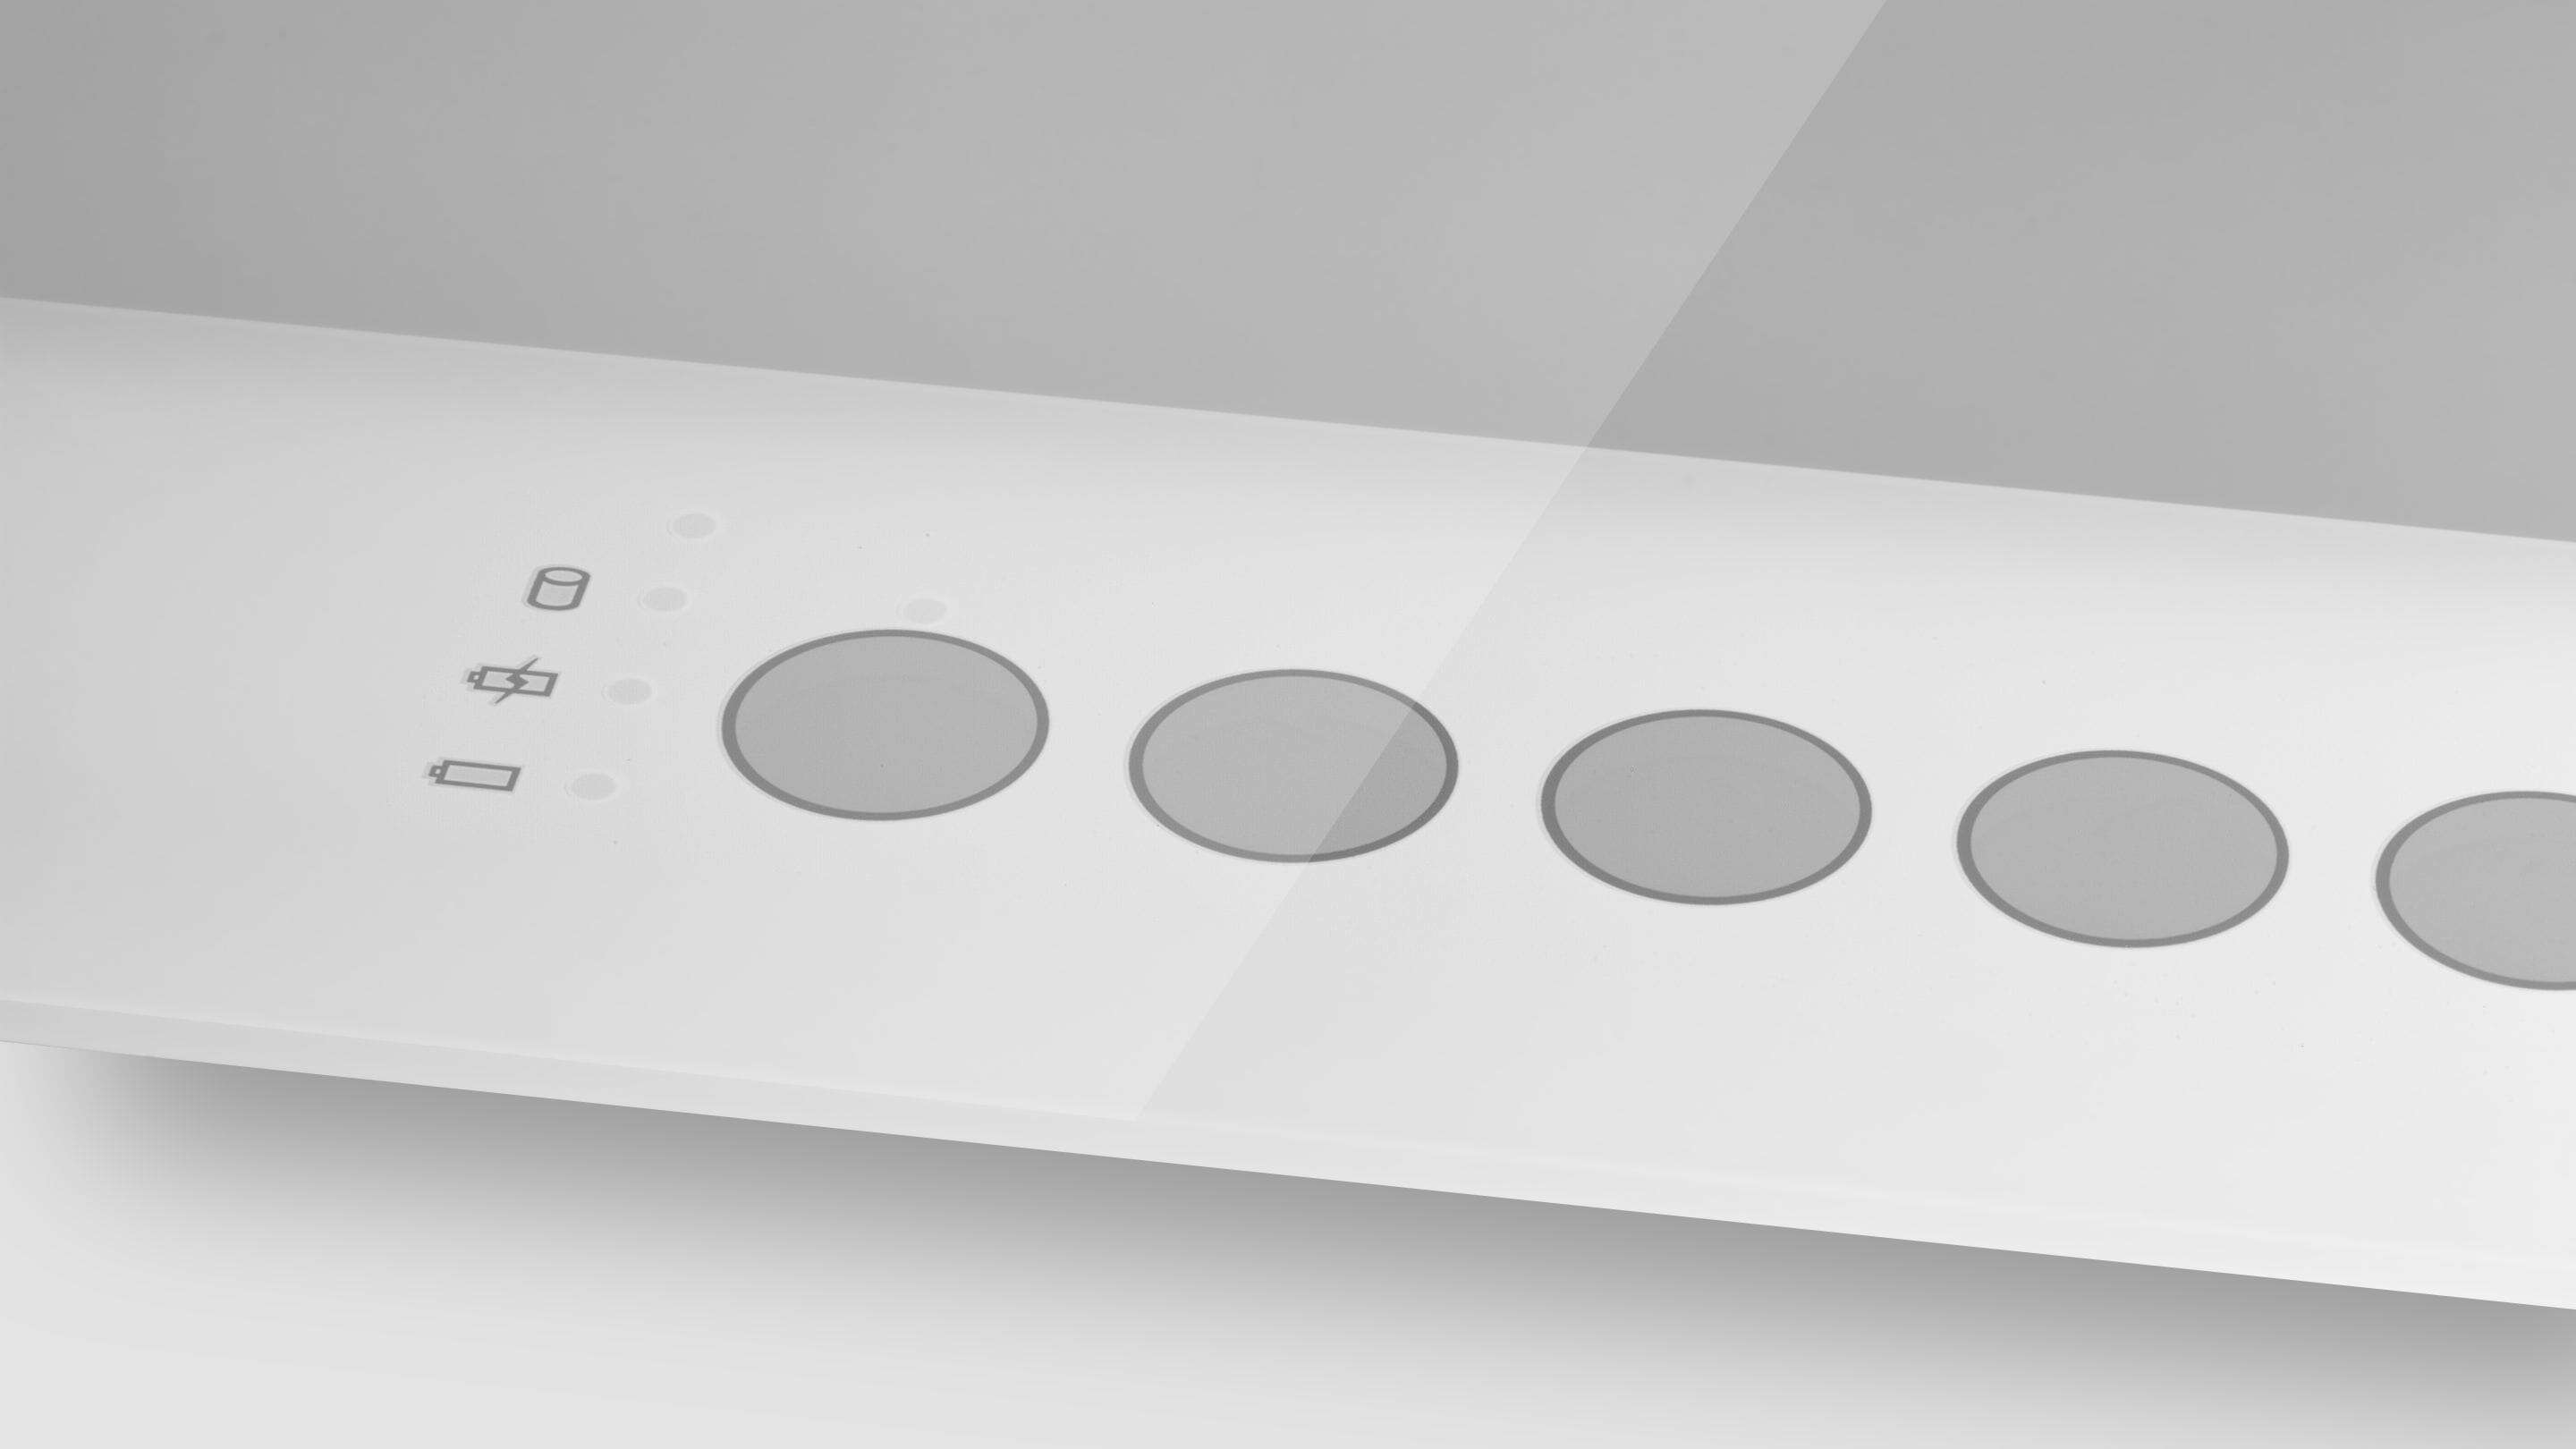 PCAP Dokunmatik Ekran - Cam Baskılı Düğmeler, üzerinde daireler bulunan beyaz dikdörtgen bir nesne